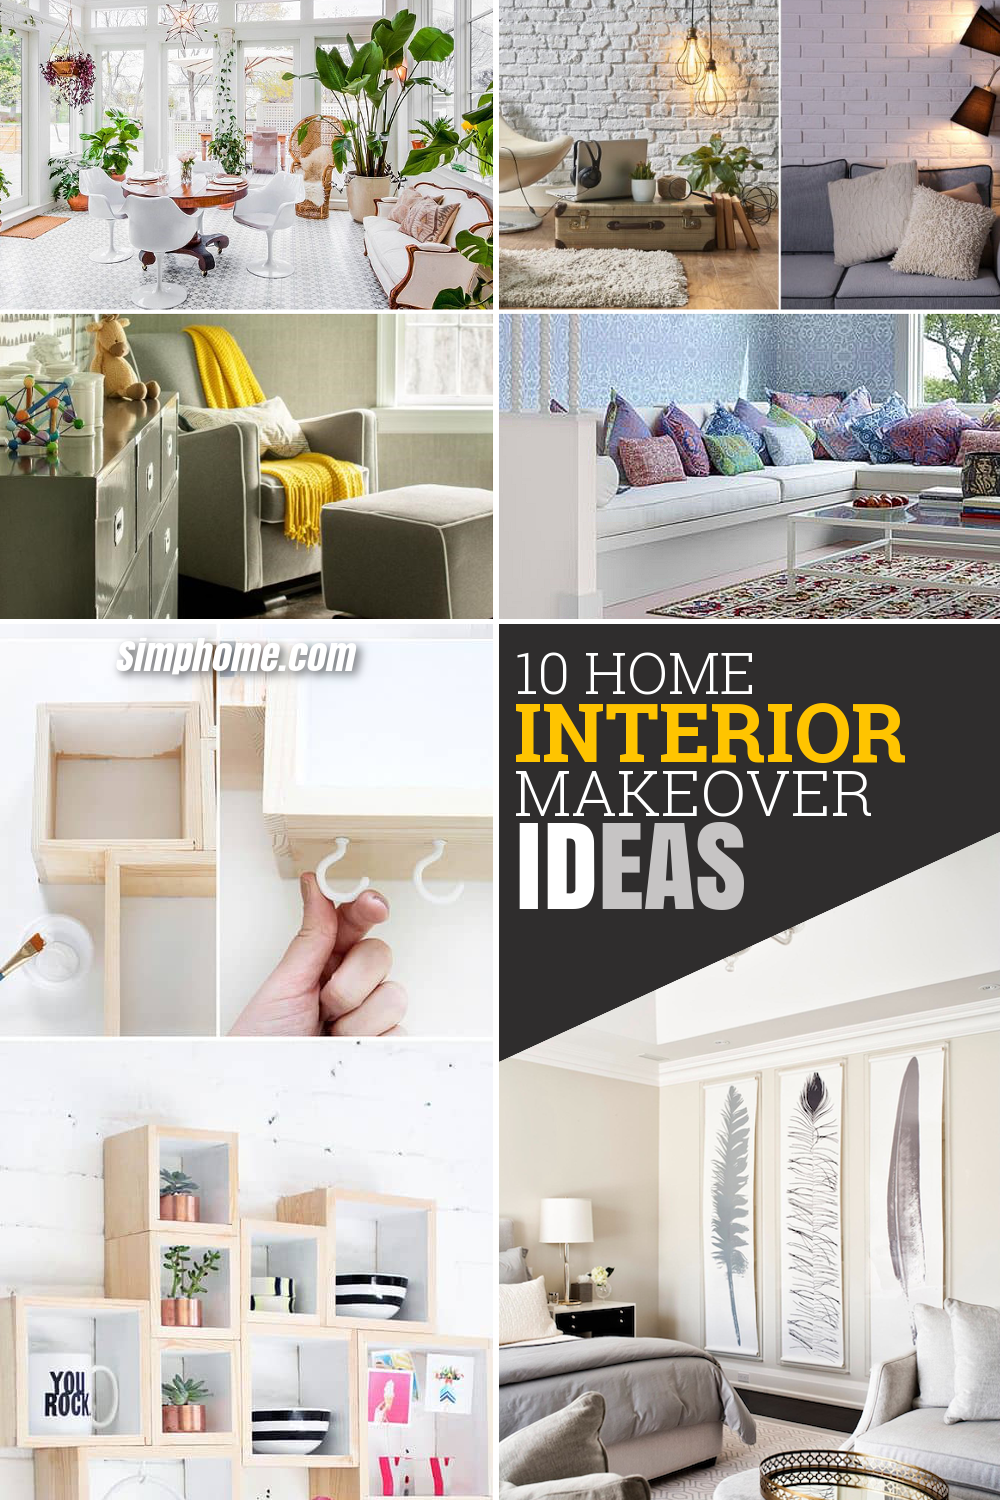 10 Home Interior Makeover Ideas via simphome com pinterest long image